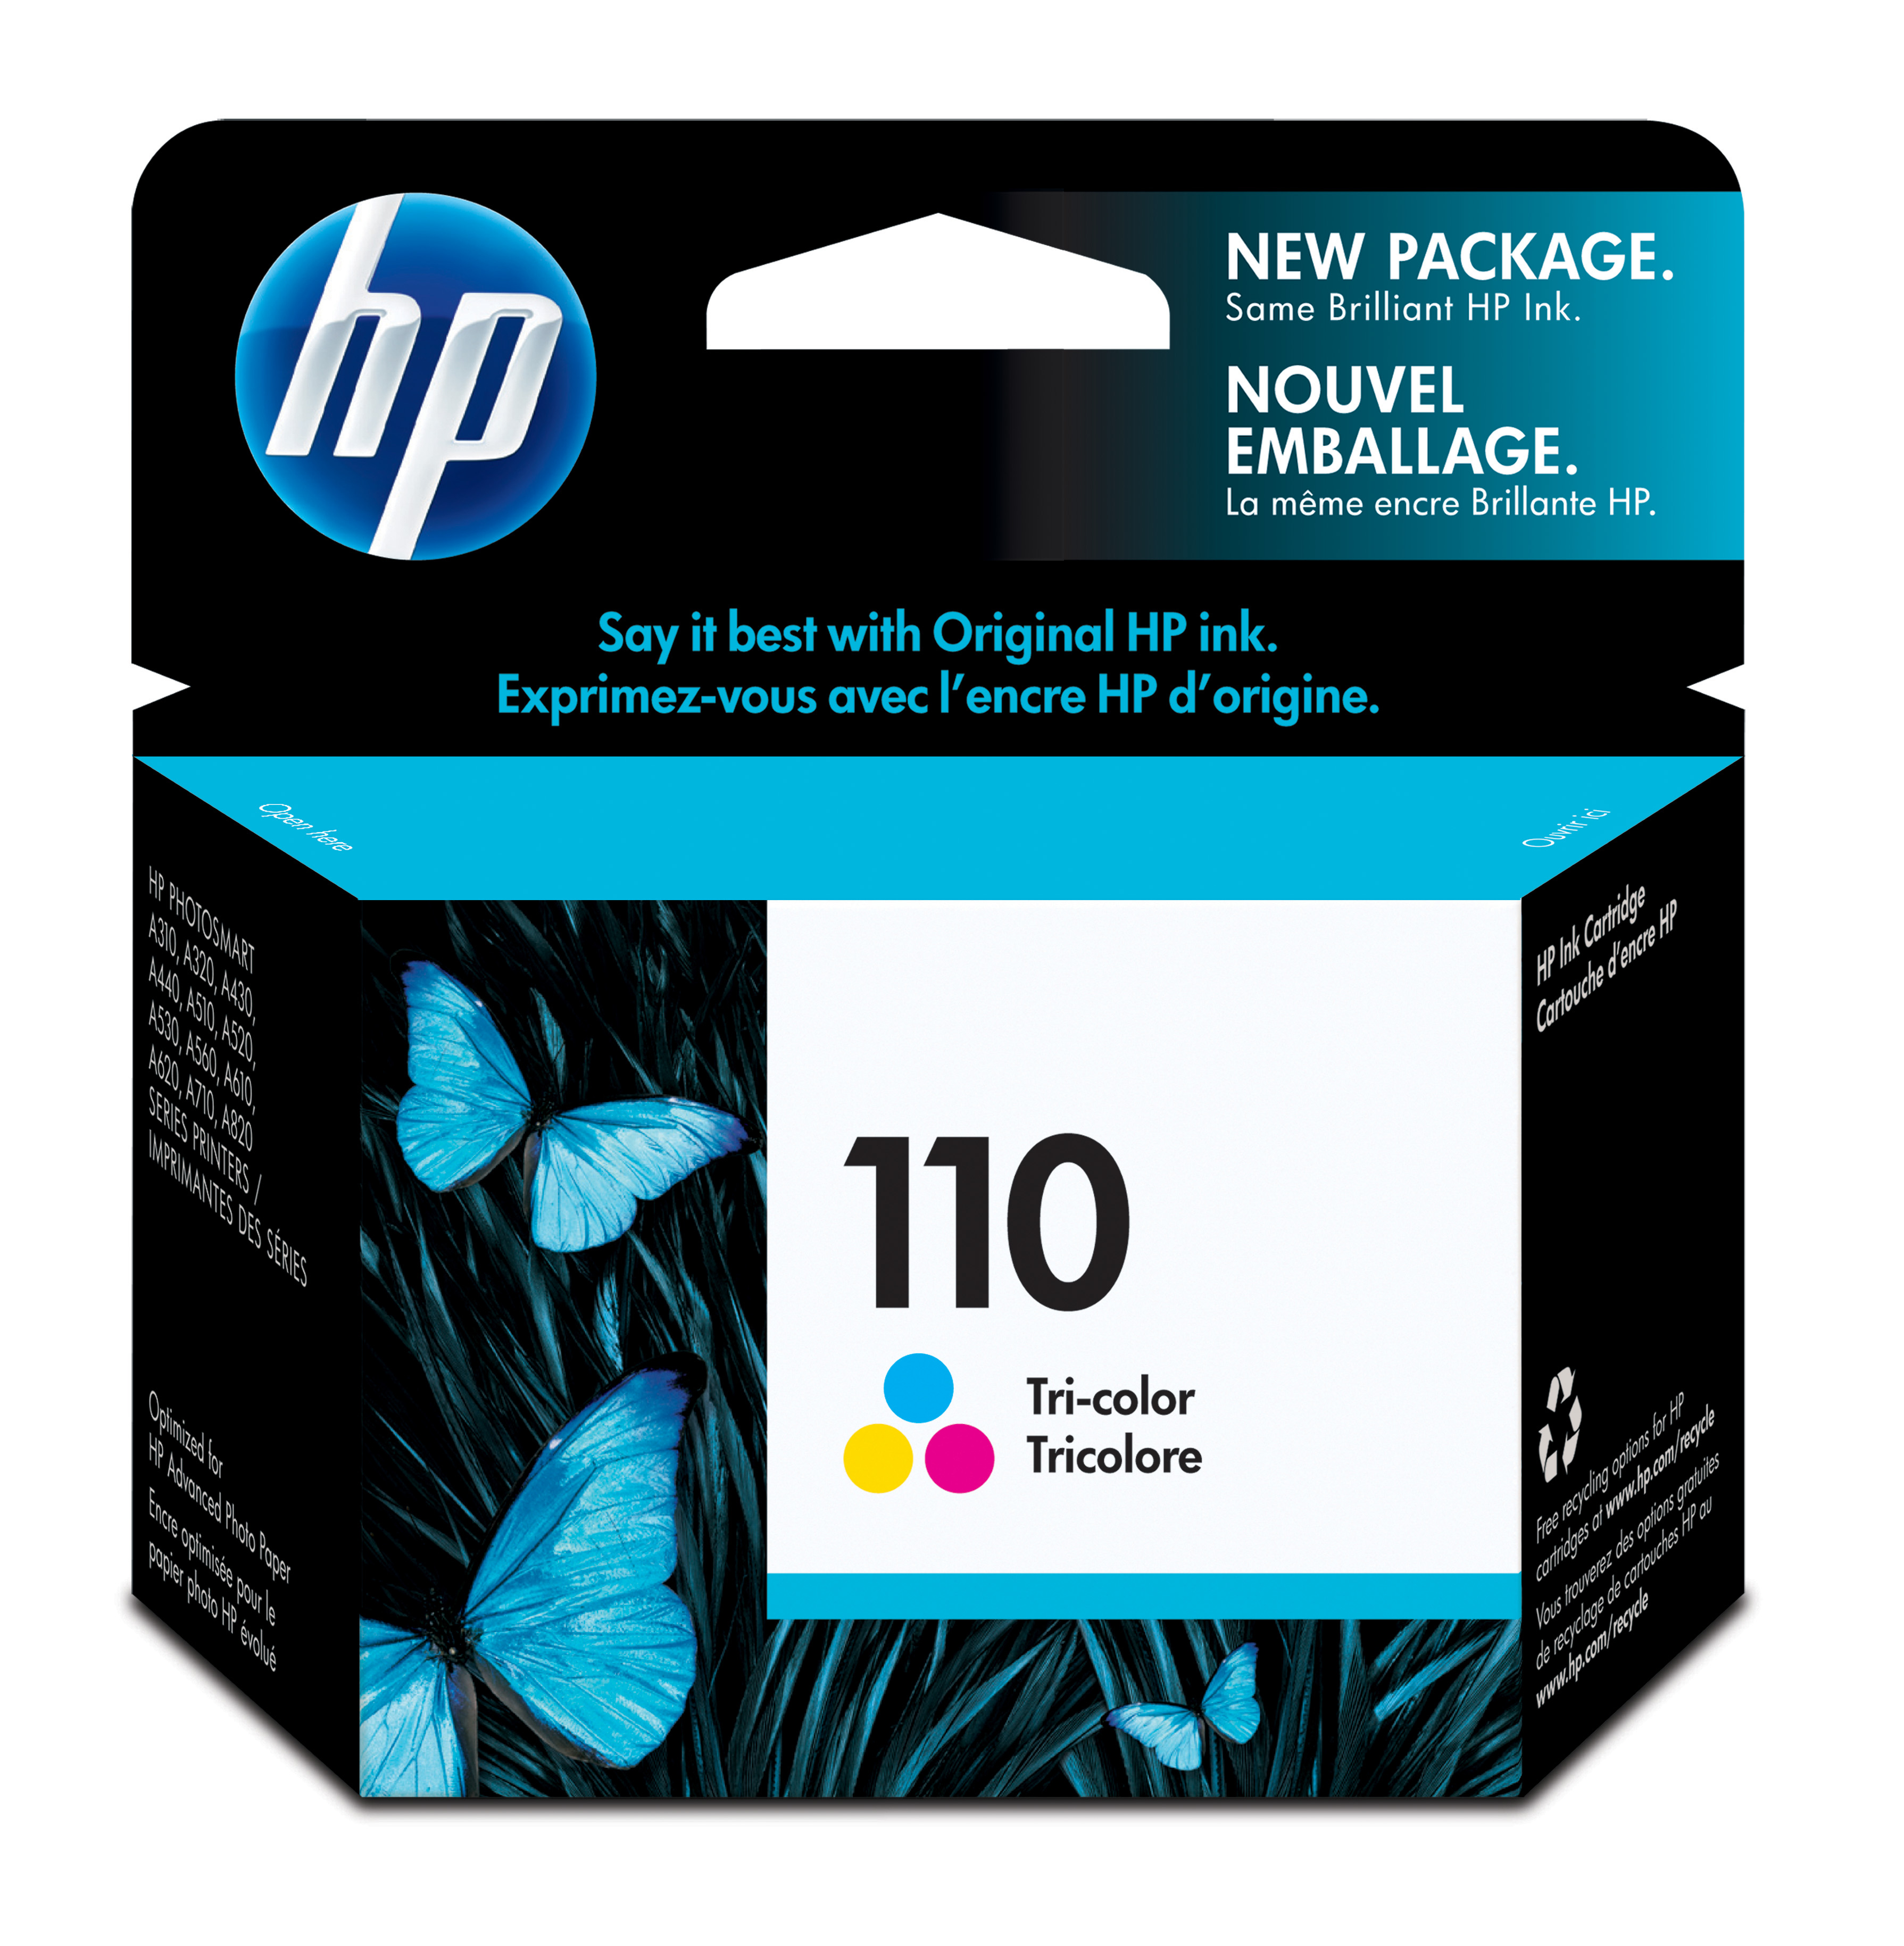 HP 110 Tri-color Inkjet Print Cartridge Genuine HP Inkjet